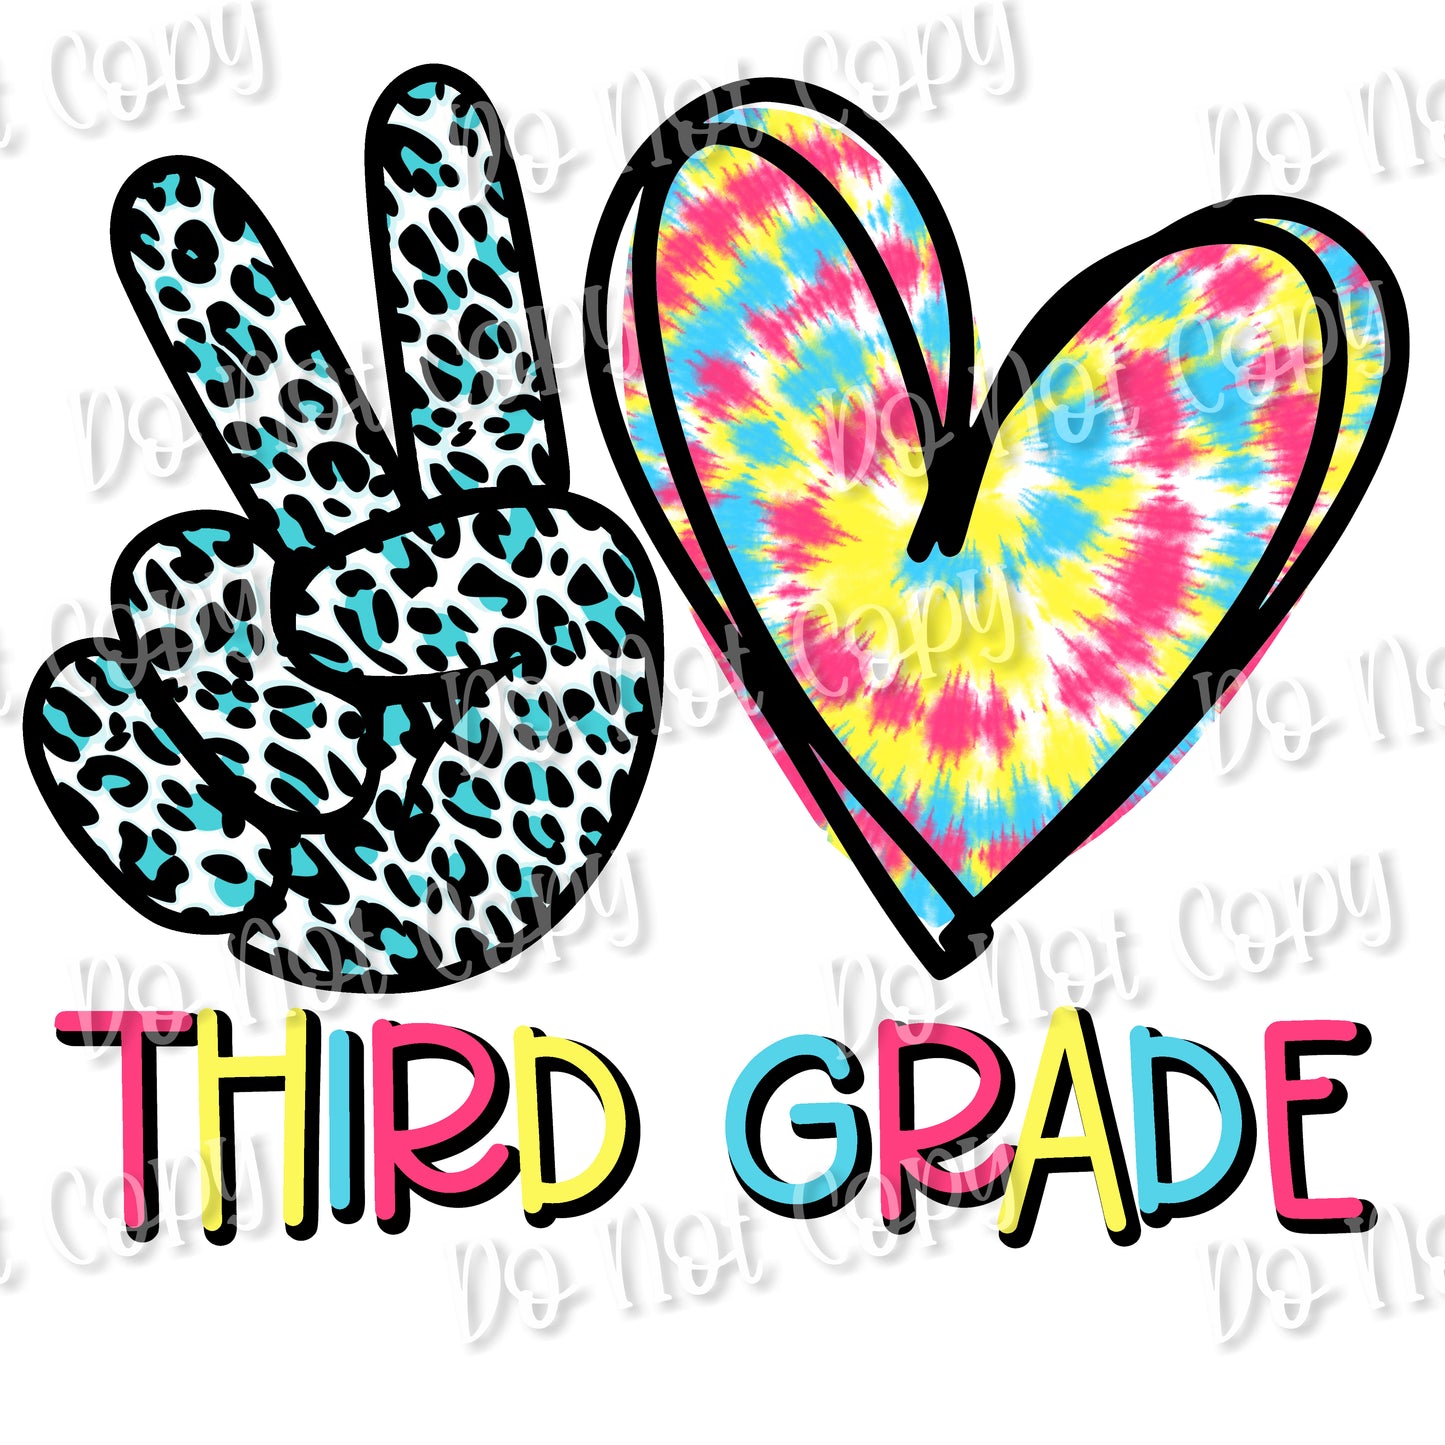 Peace Love 3rd Grade sub